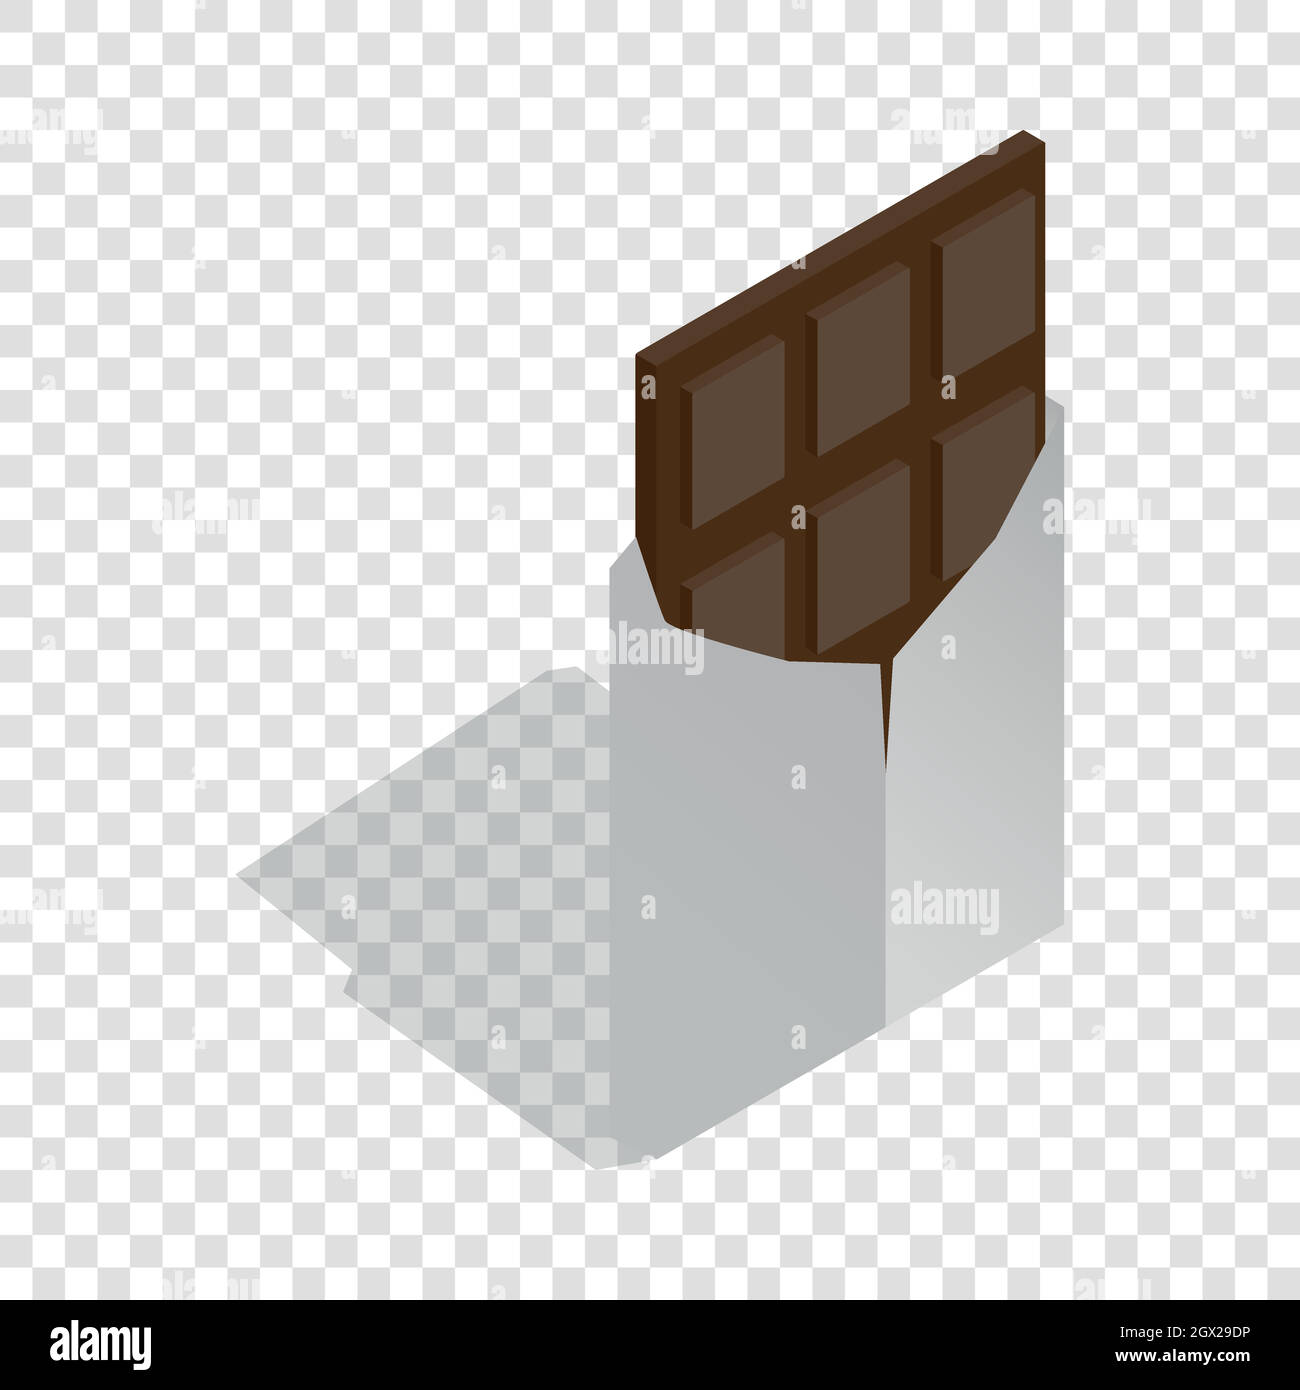 Dark chocolate isometric icon Stock Vector